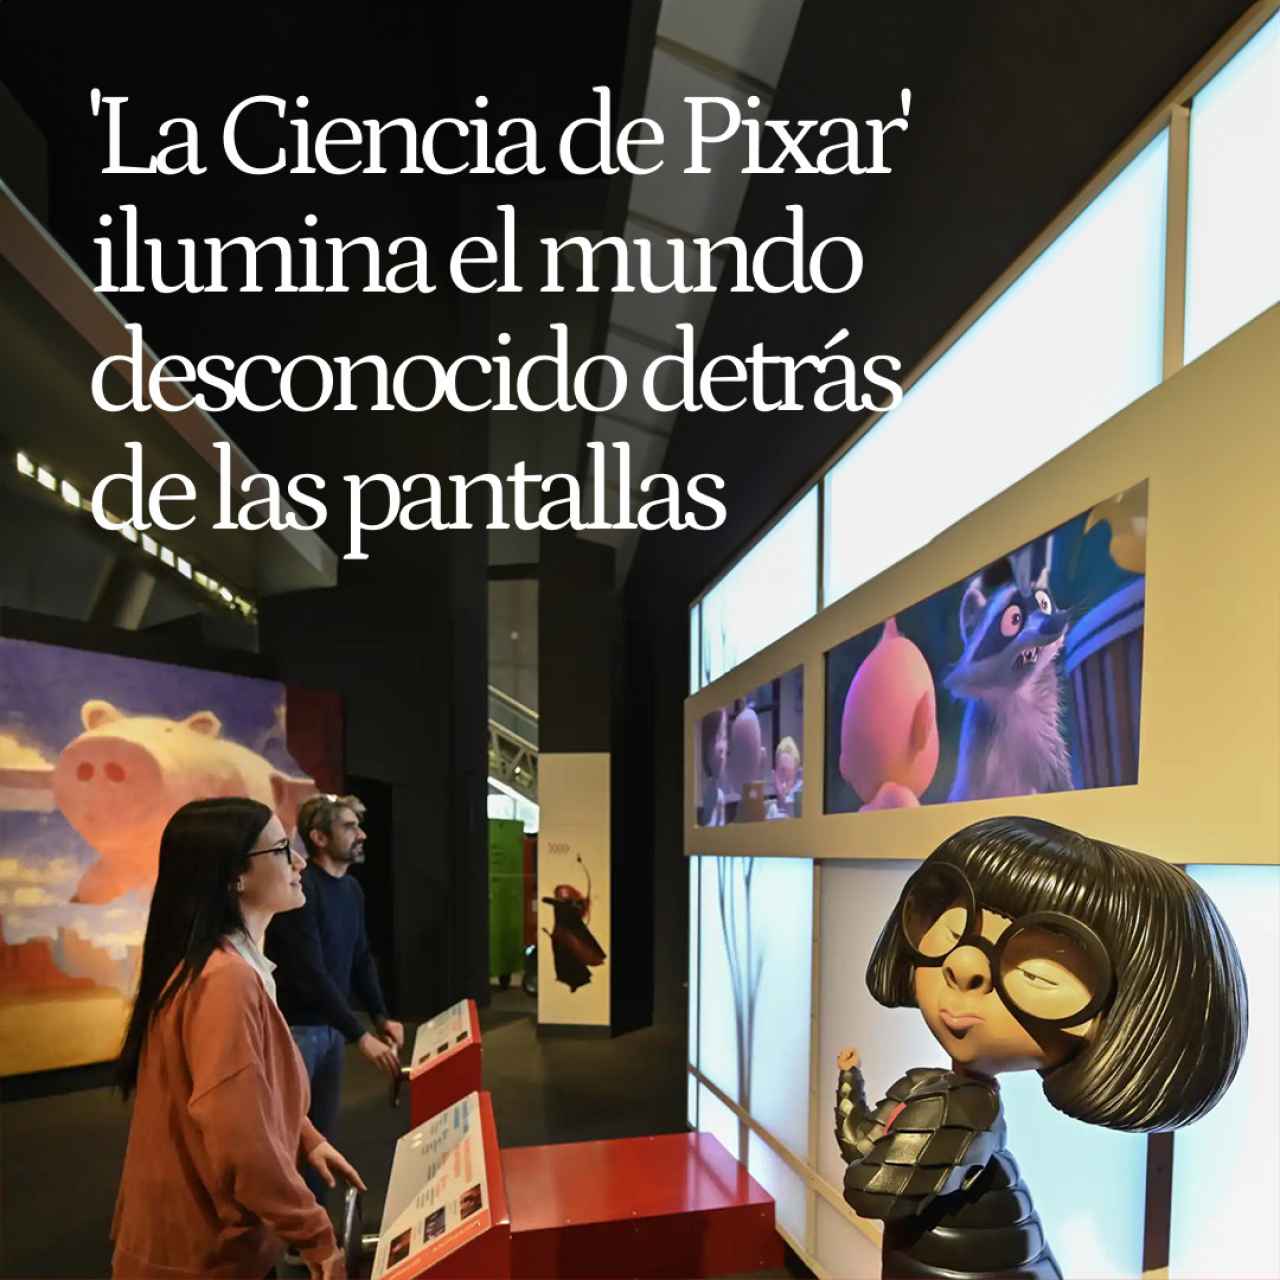 'La Ciencia de Pixar' ilumina el mundo desconocido detrás de las pantallas